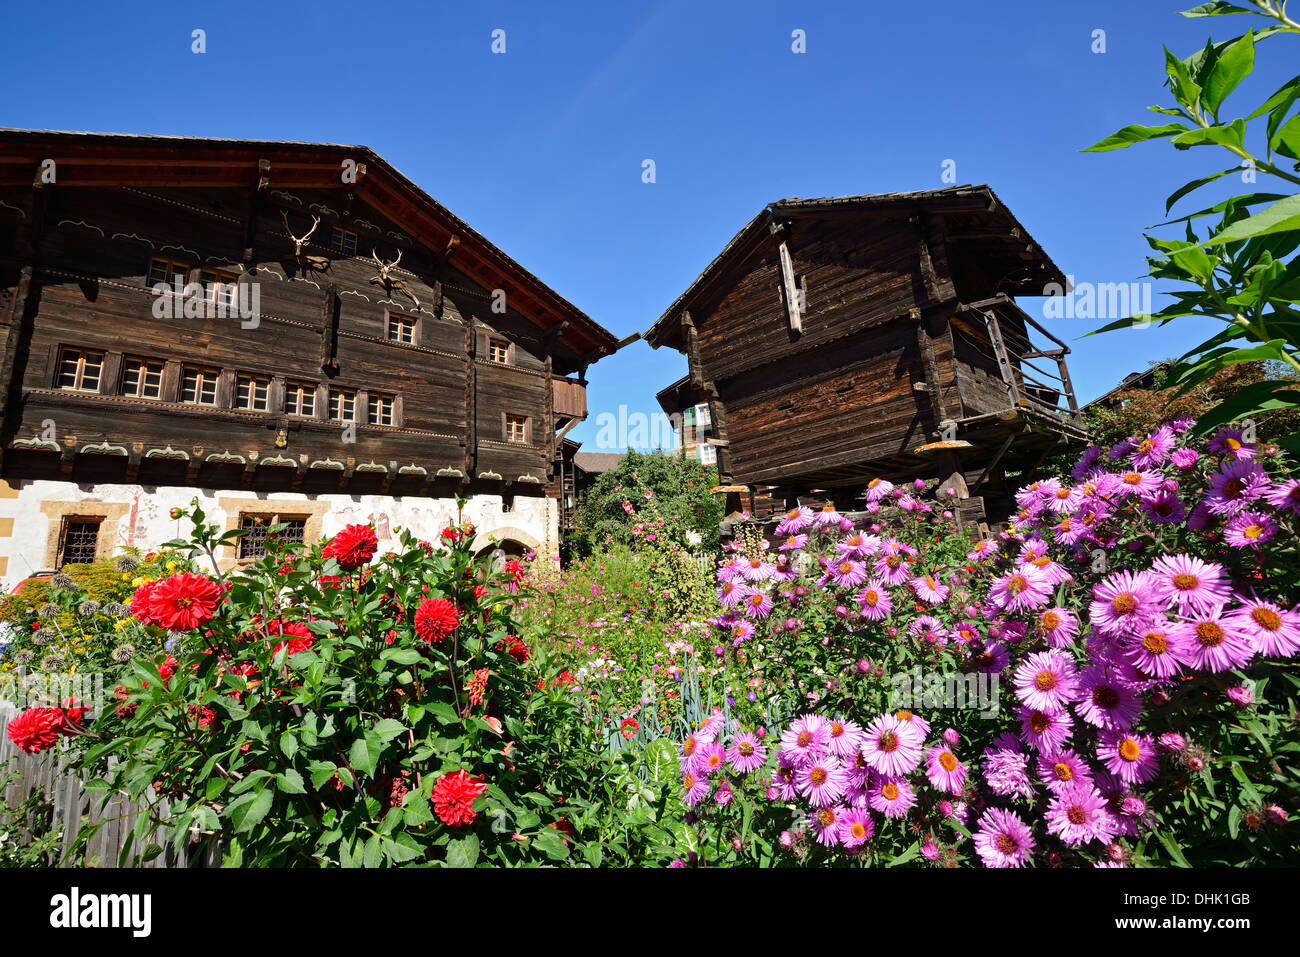 Jardín y casa de madera tradicional, Valais, Suiza Foto de stock